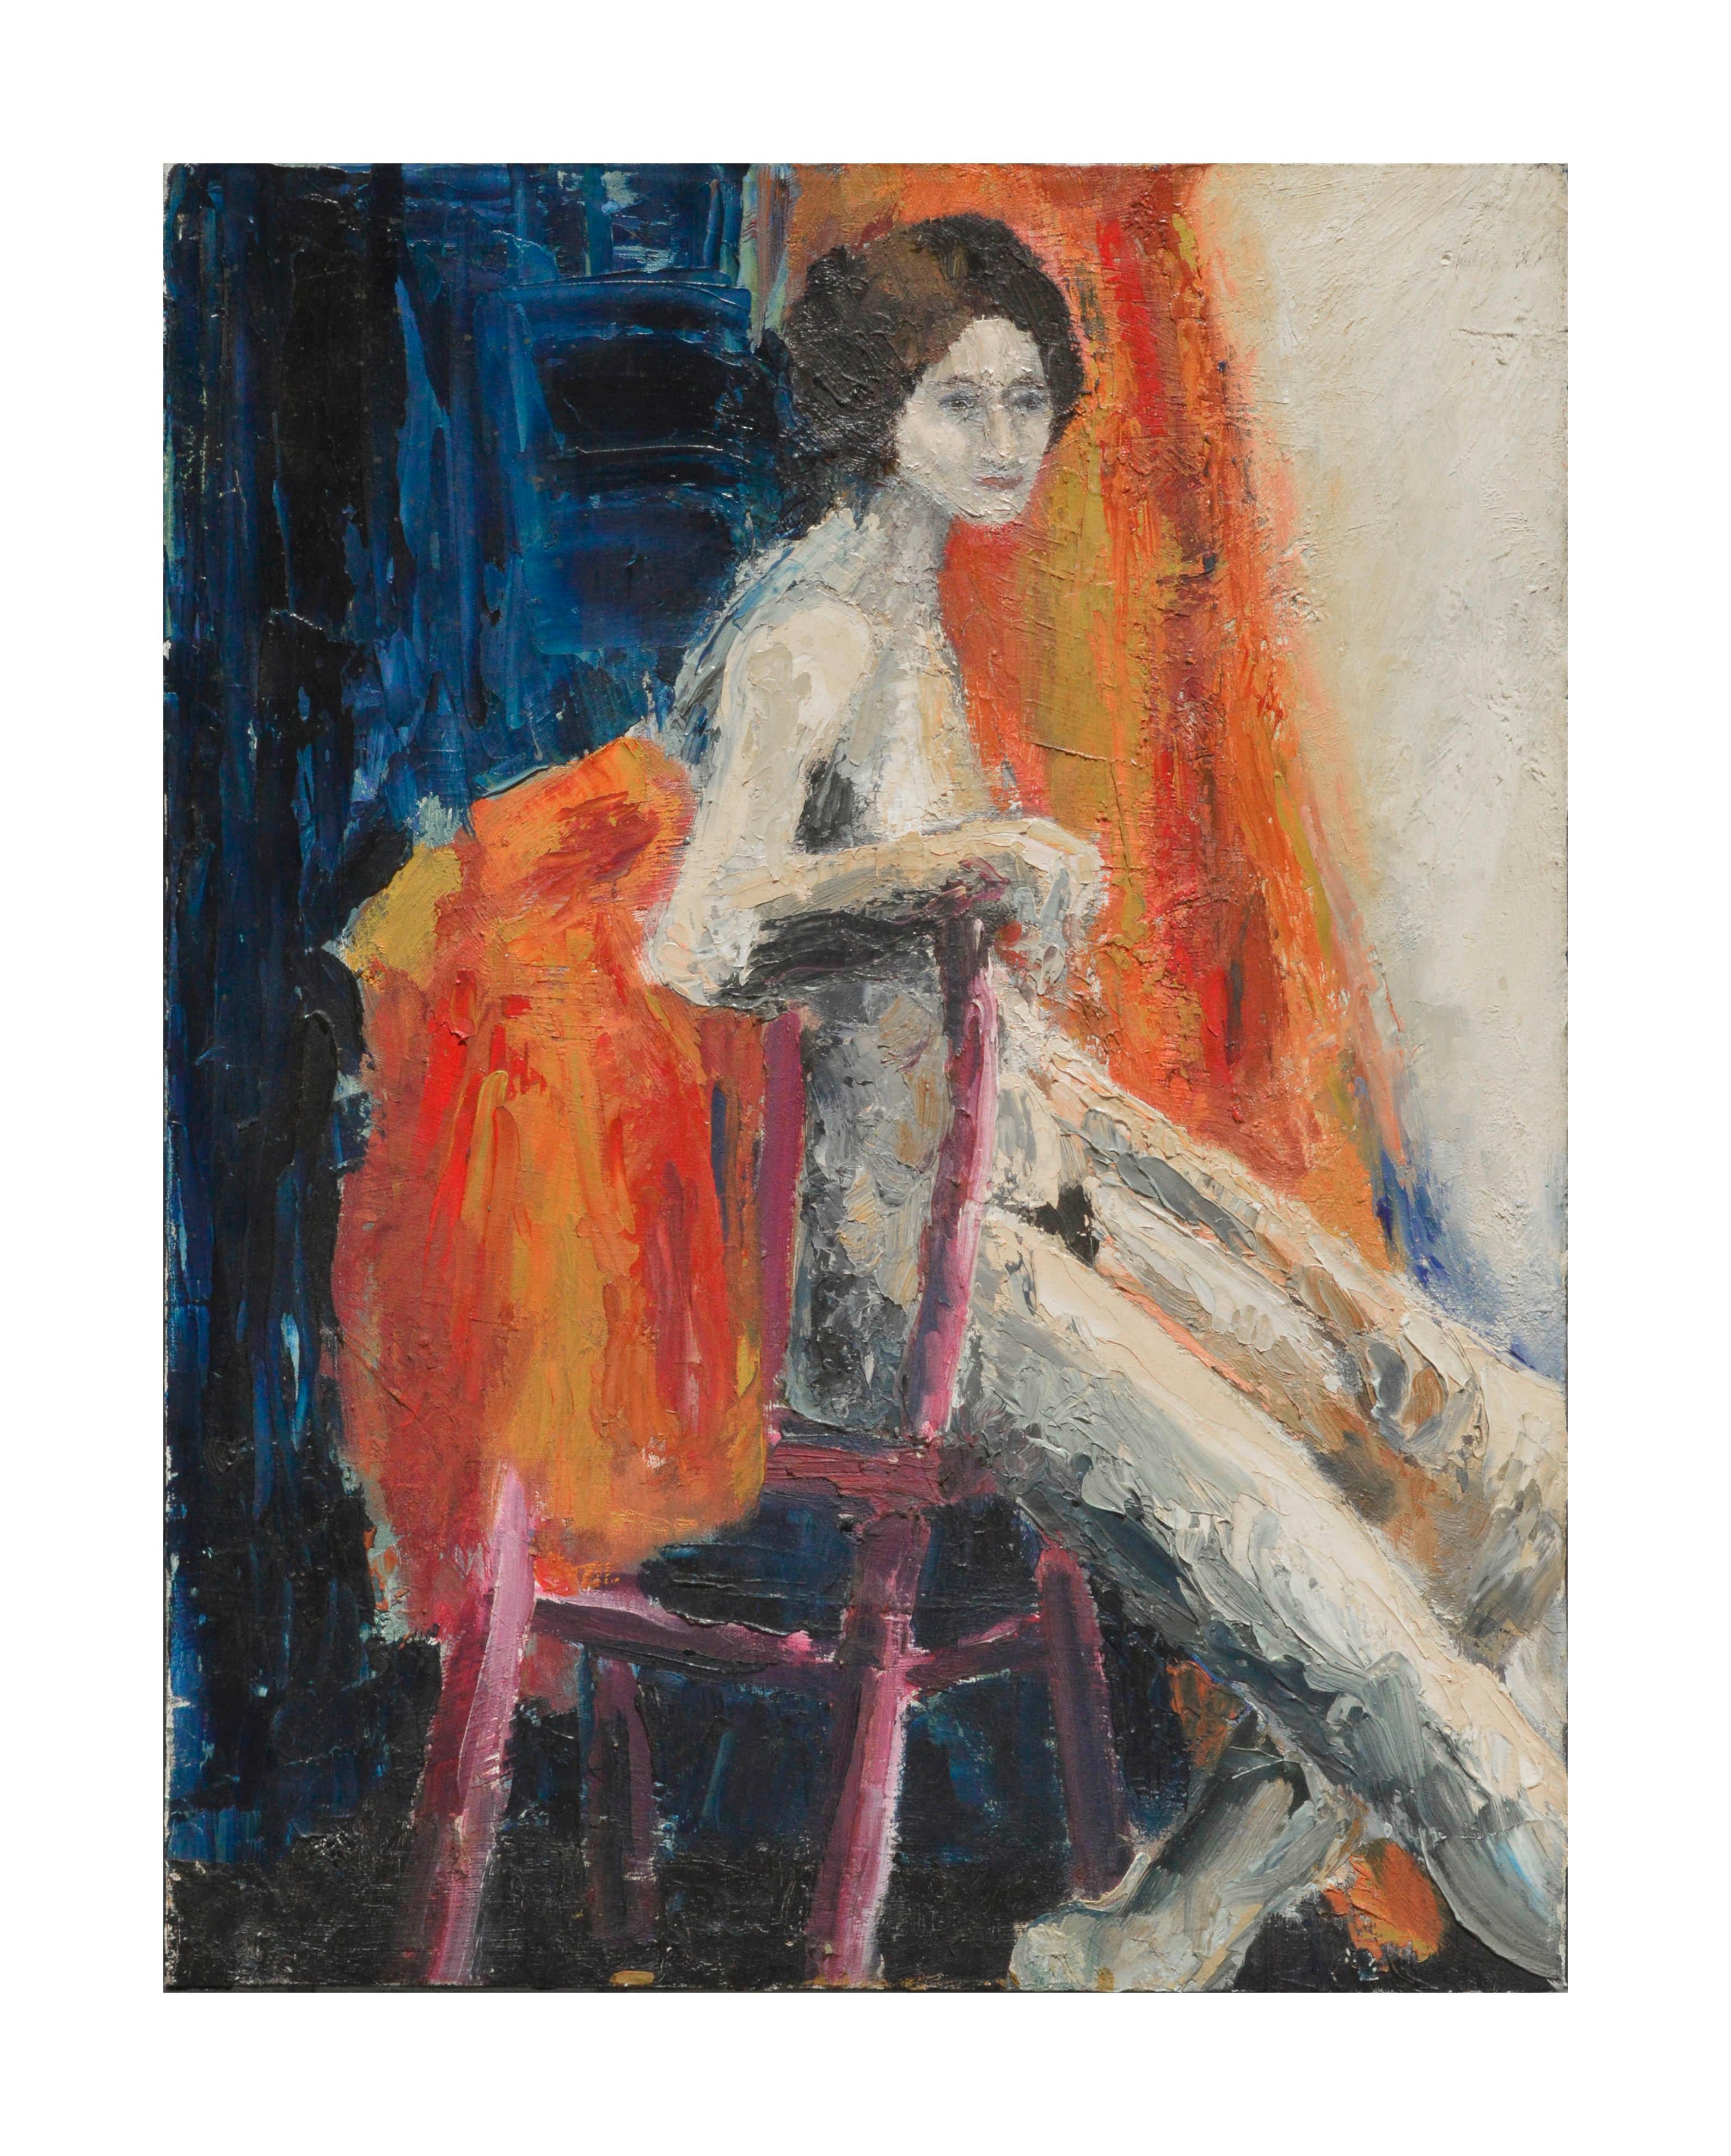 Unknown Nude Painting – Abstrakt-expressionistische figurative sitzende nackte Frau, abstrakt